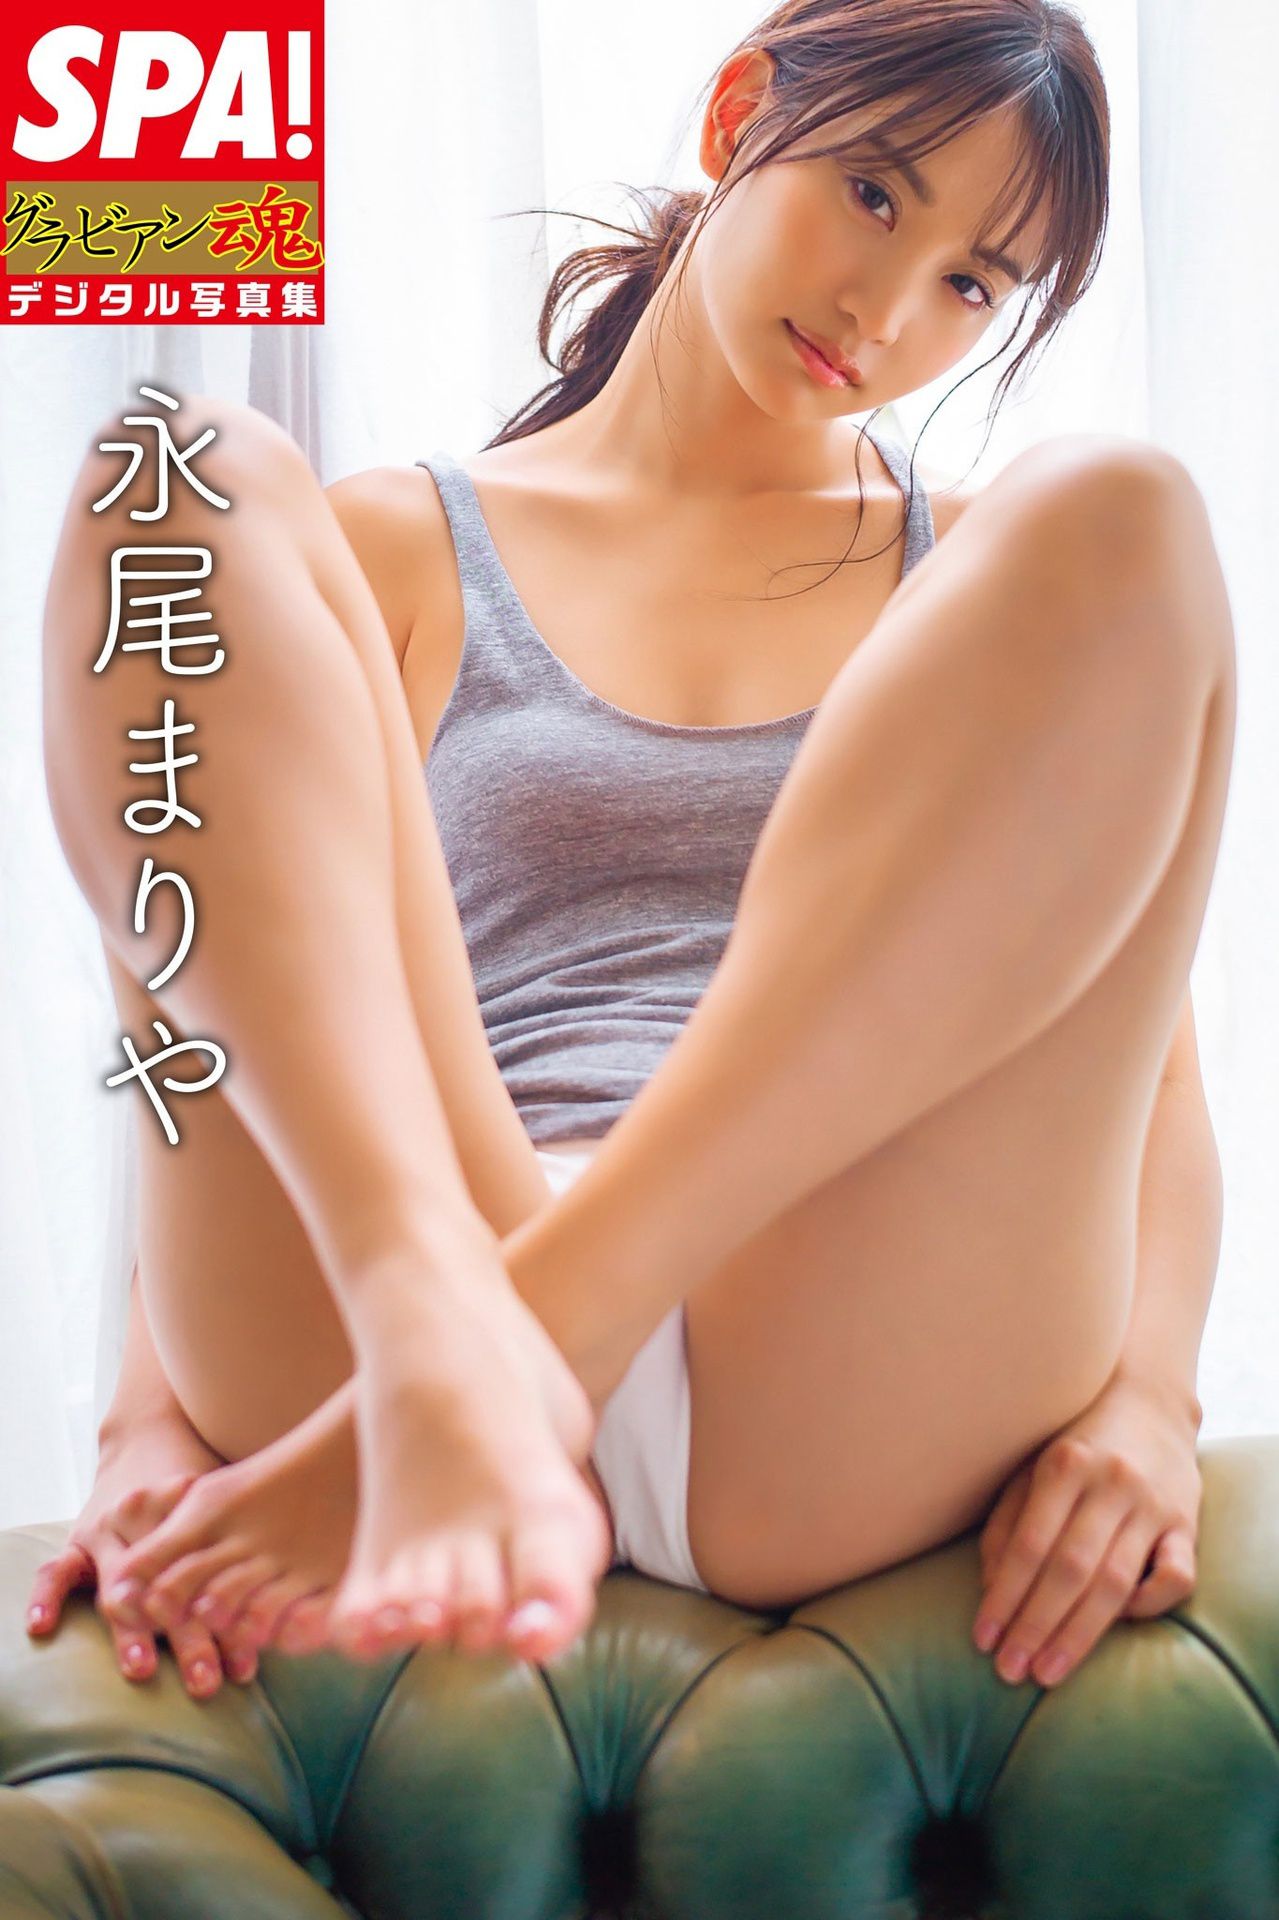 Mariya nagao nude